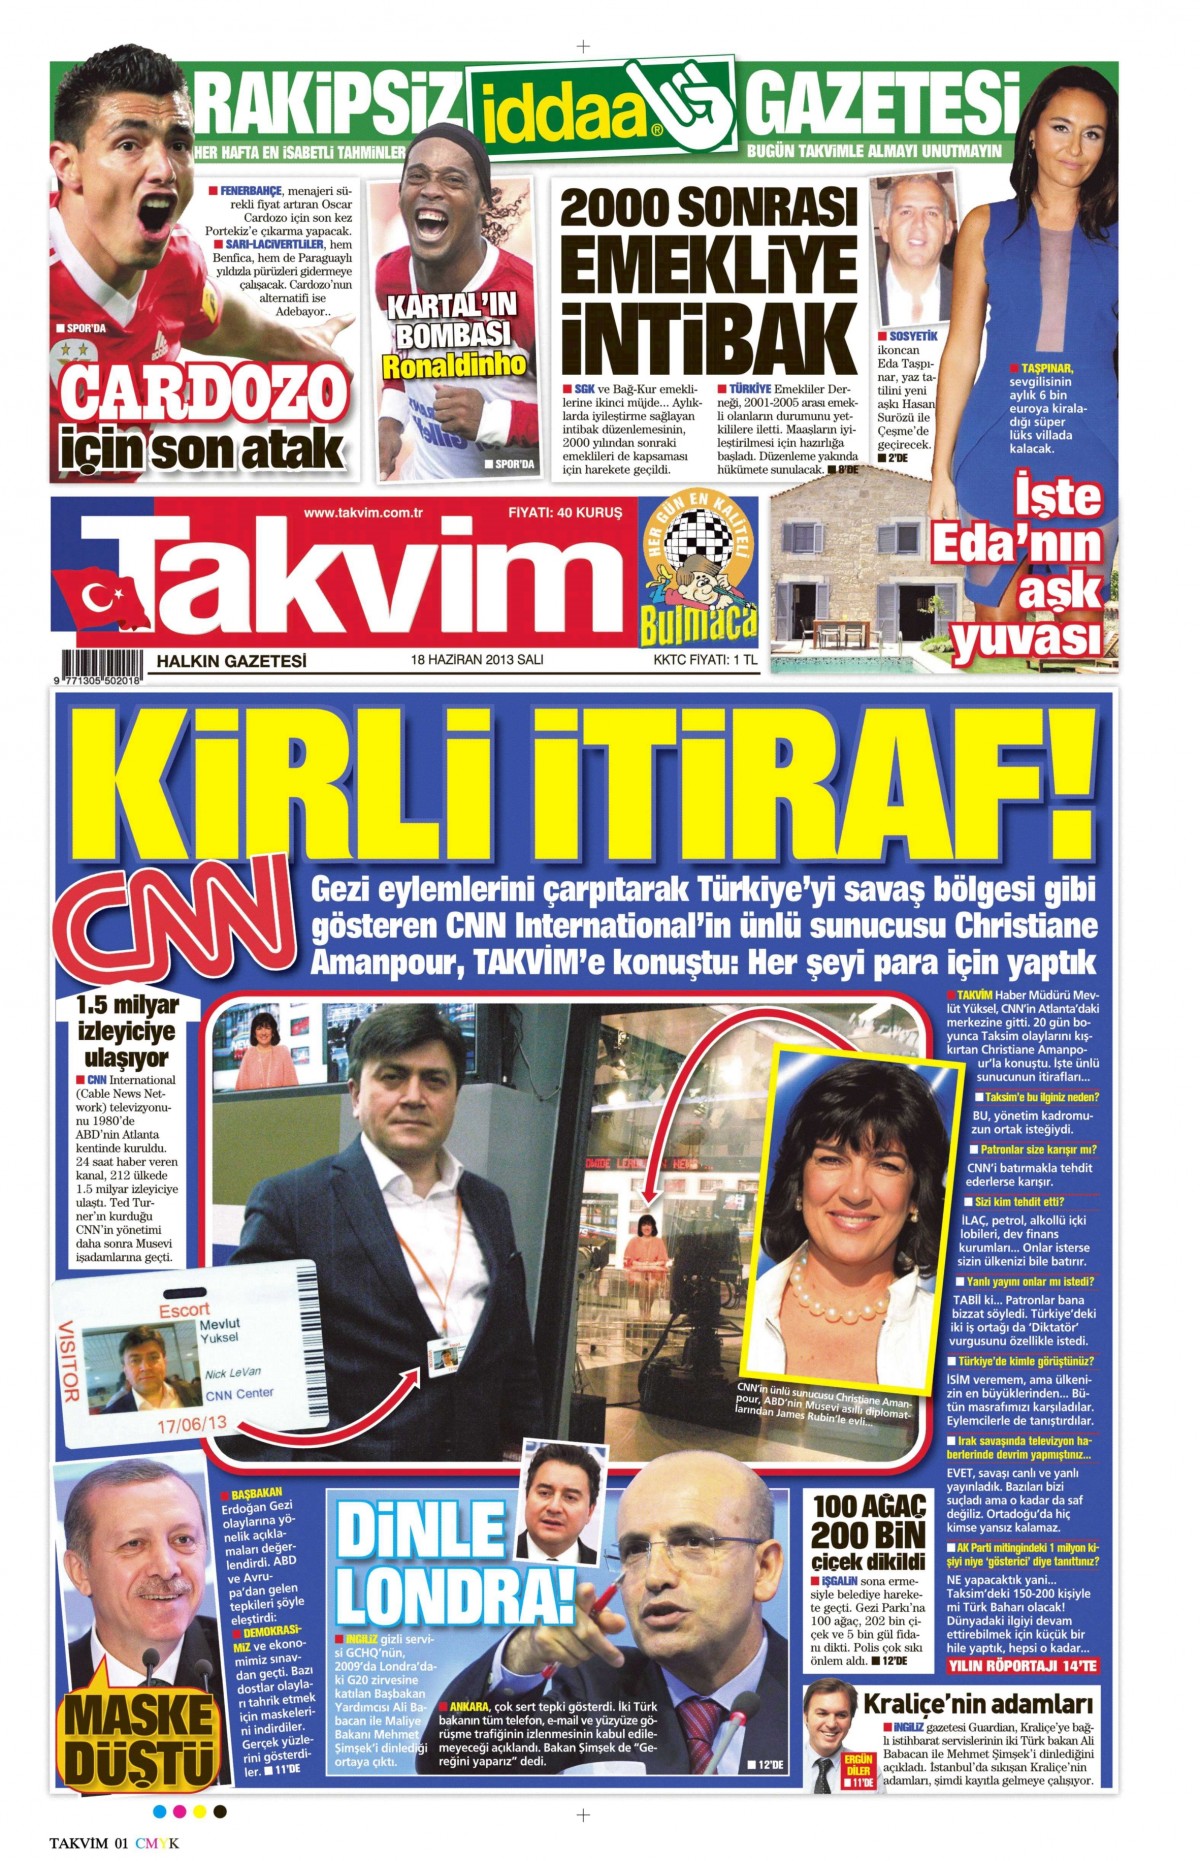 Takvim'in 18 Haziran 2013'teki nüshasında hayali Amanpour söyleşisi yer almıştı